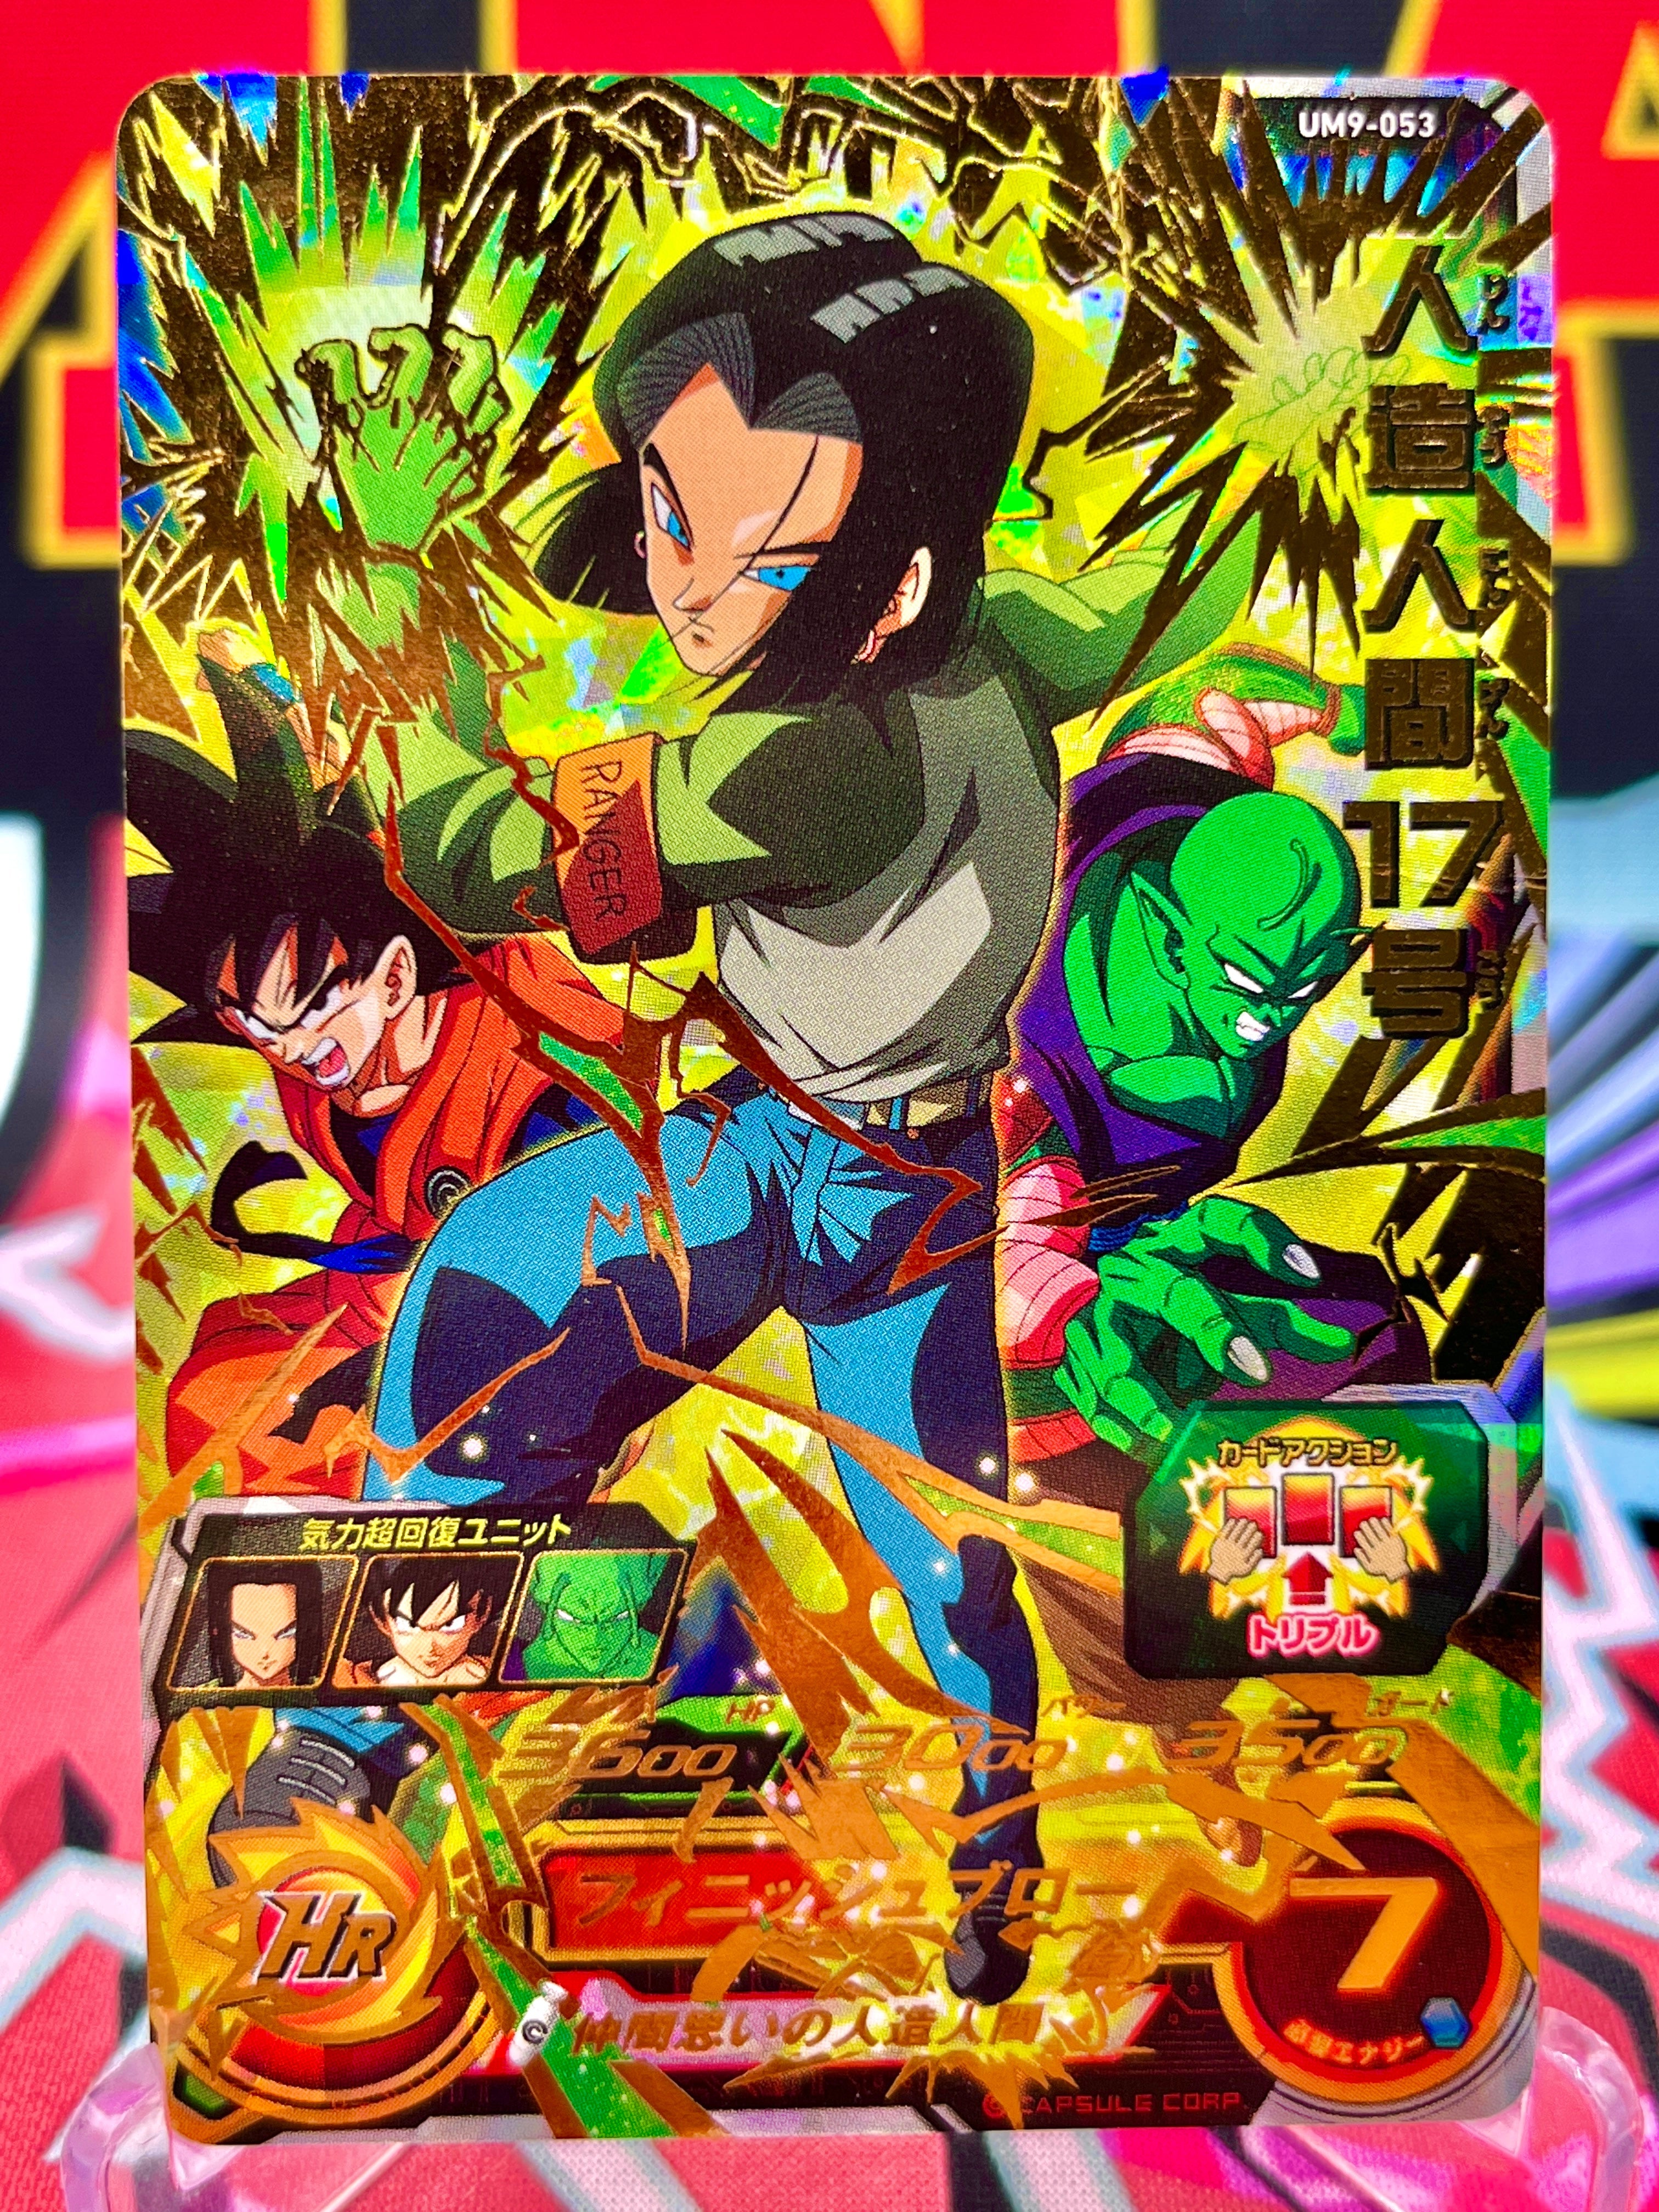 UM9-053 Android 17, Goku, & Piccolo UR (2019)